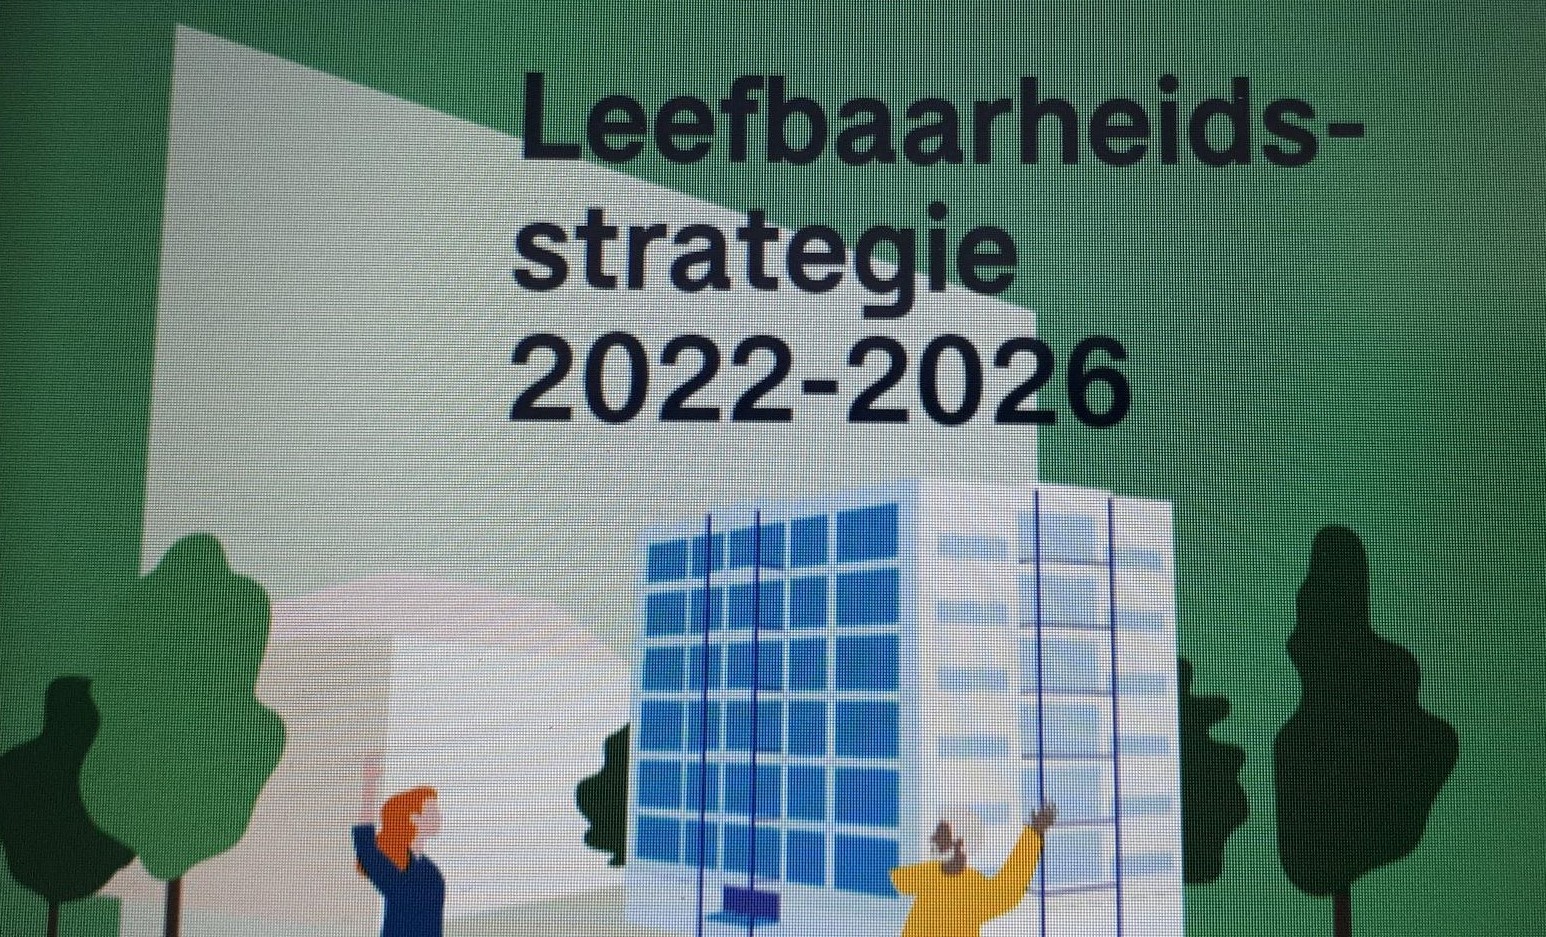 Staedion ontwikkelt de Leefbaarheidsstrategie 2022-2026